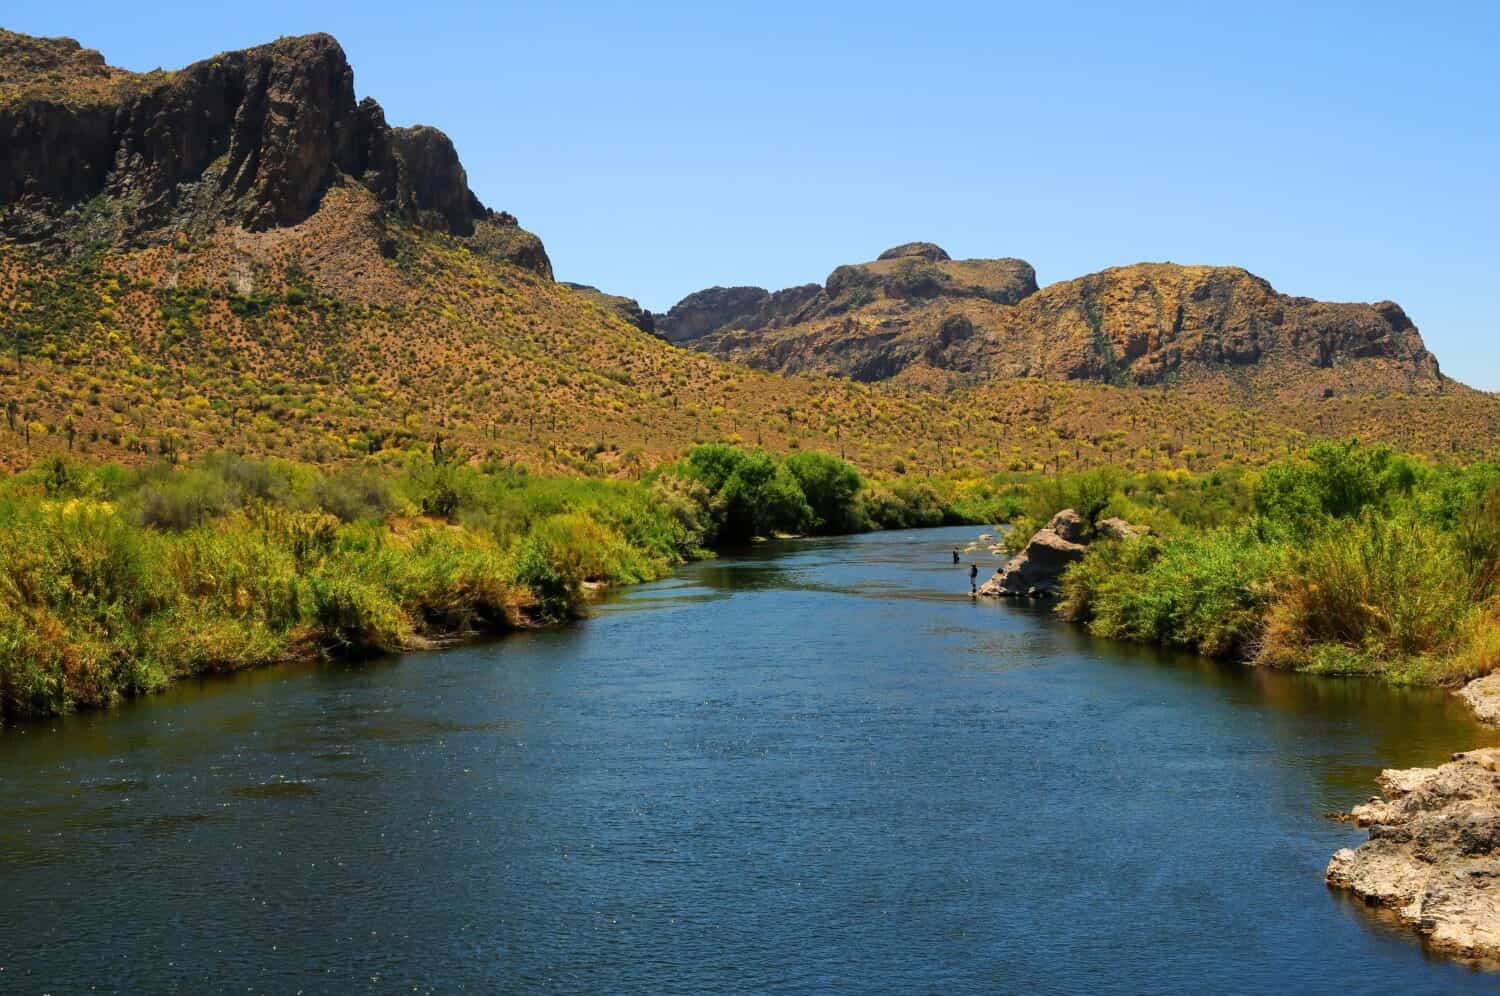 Salt River Arizona recreationa area, Desert Mountains, east of Phoenix Arizona